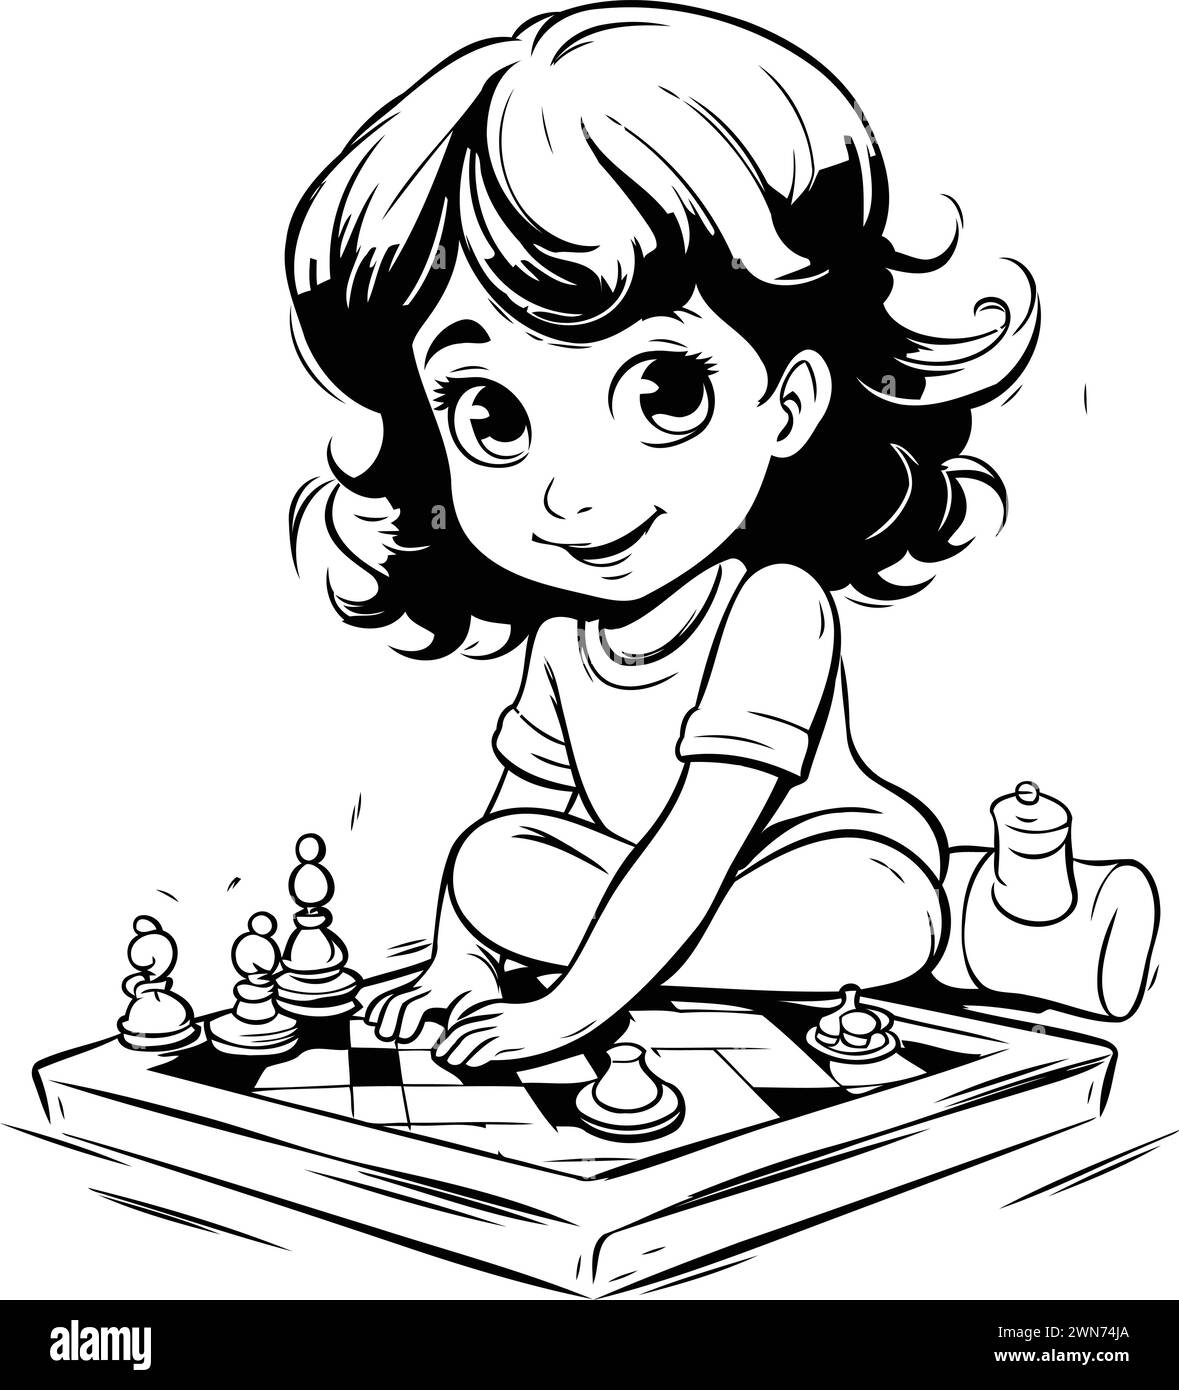 Fille mignonne jouant aux échecs. Illustration vectorielle noir et blanc pour livre de coloriage. Illustration de Vecteur